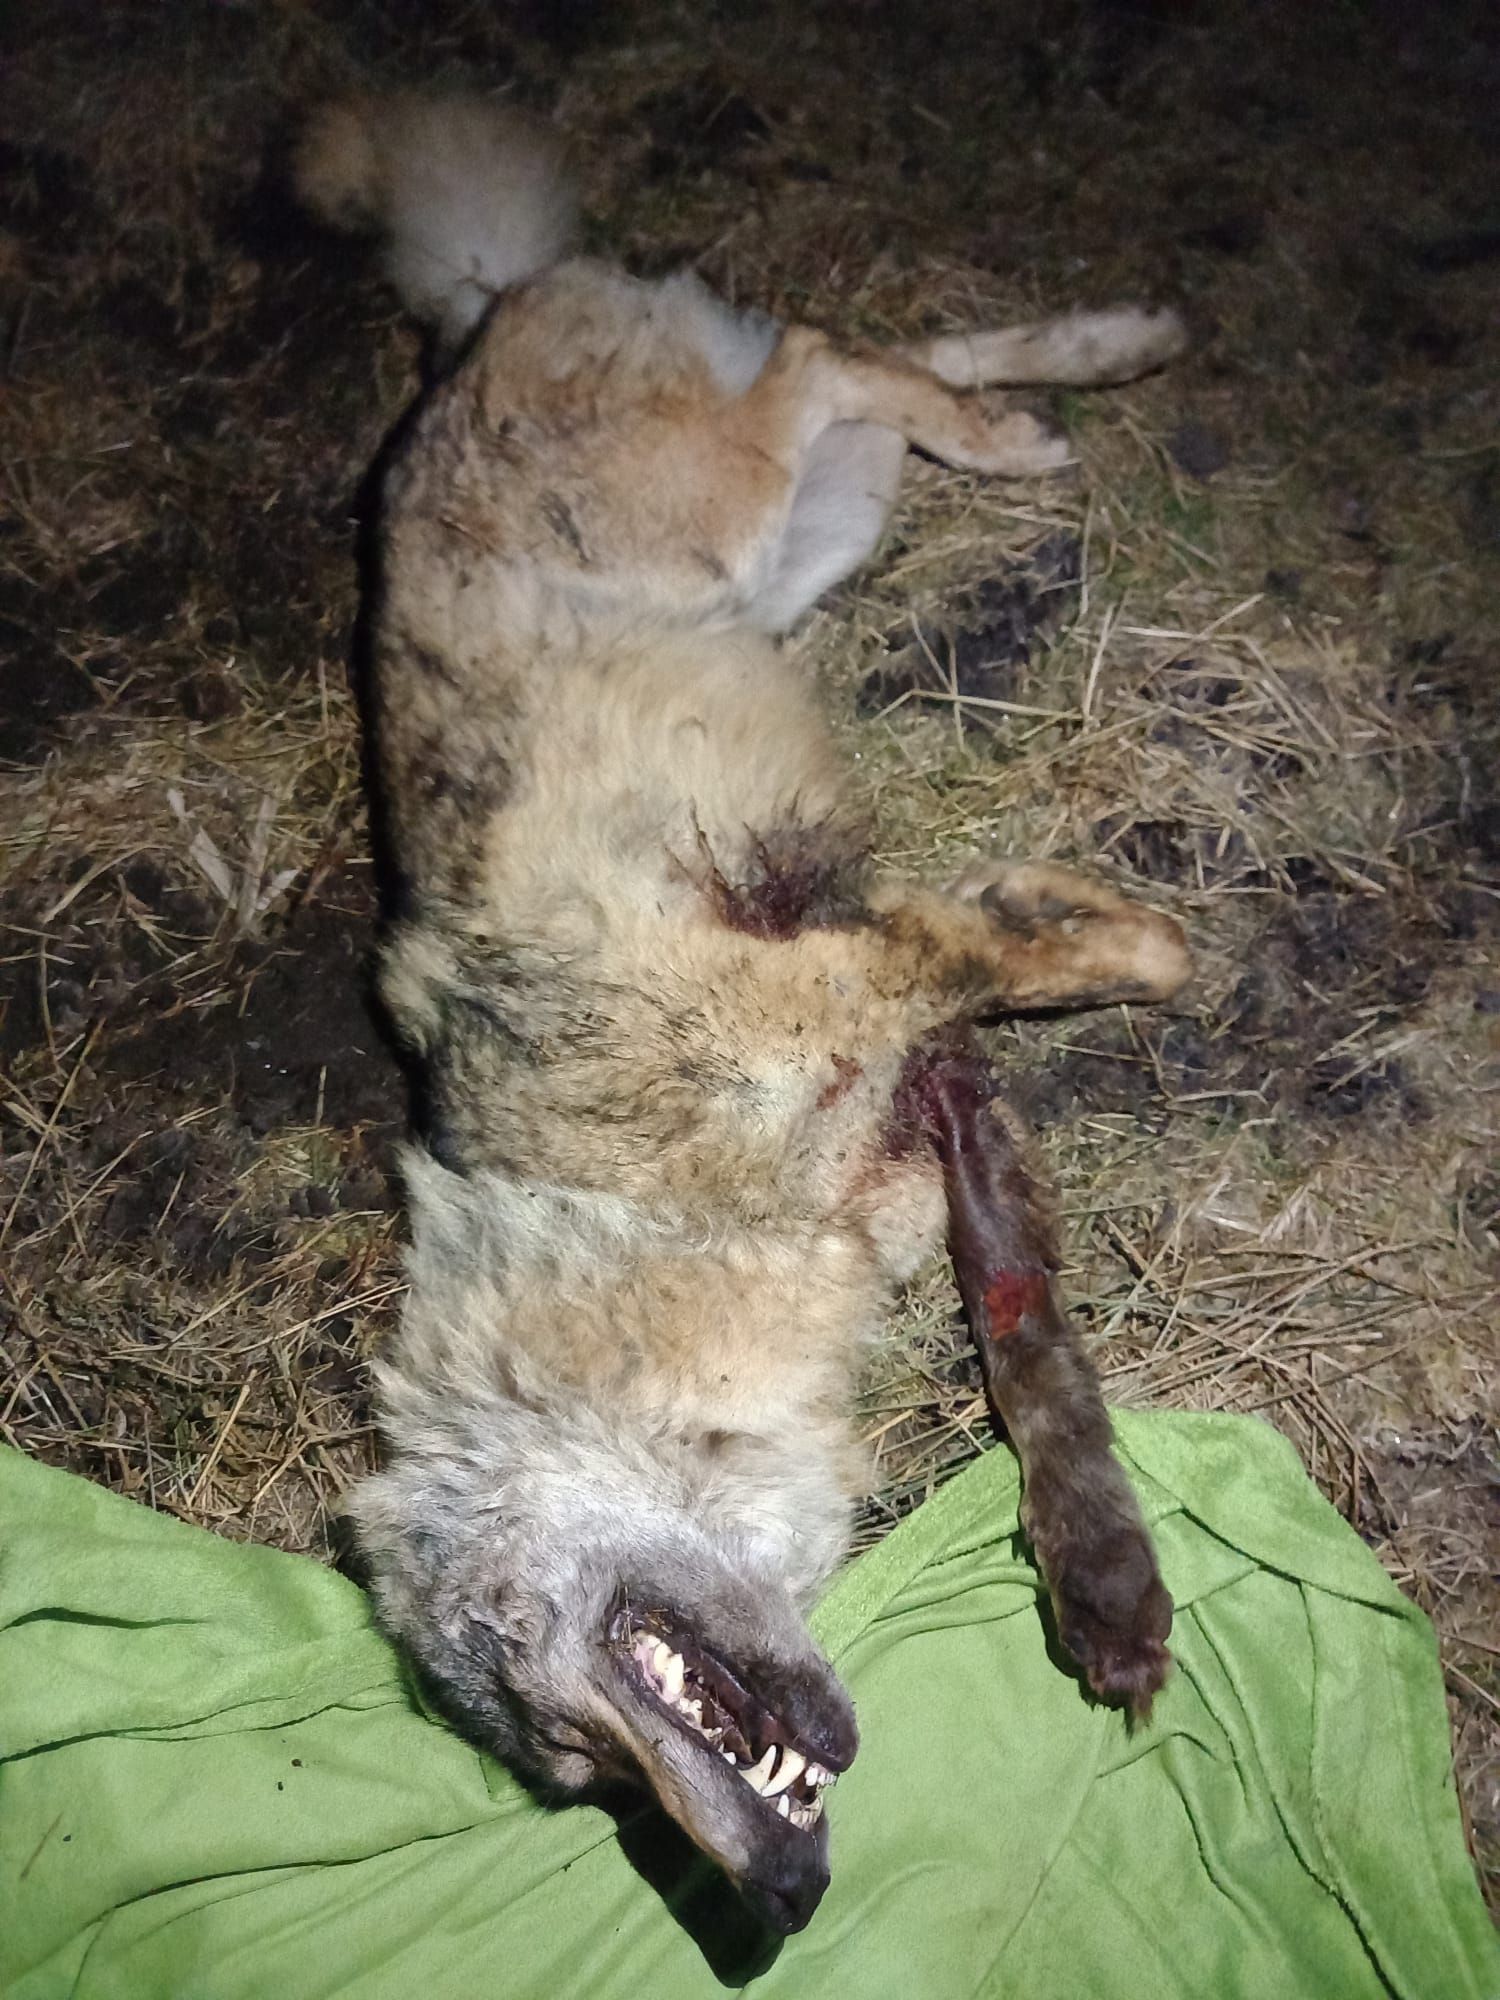 Kilkuletni samiec wilka postrzelony w przednią łapę w okolicach Trzebielina (woj. pomorskie), znaleziony w stanie agonalnym 12 marca 2022 r. Autor. K. Lesner